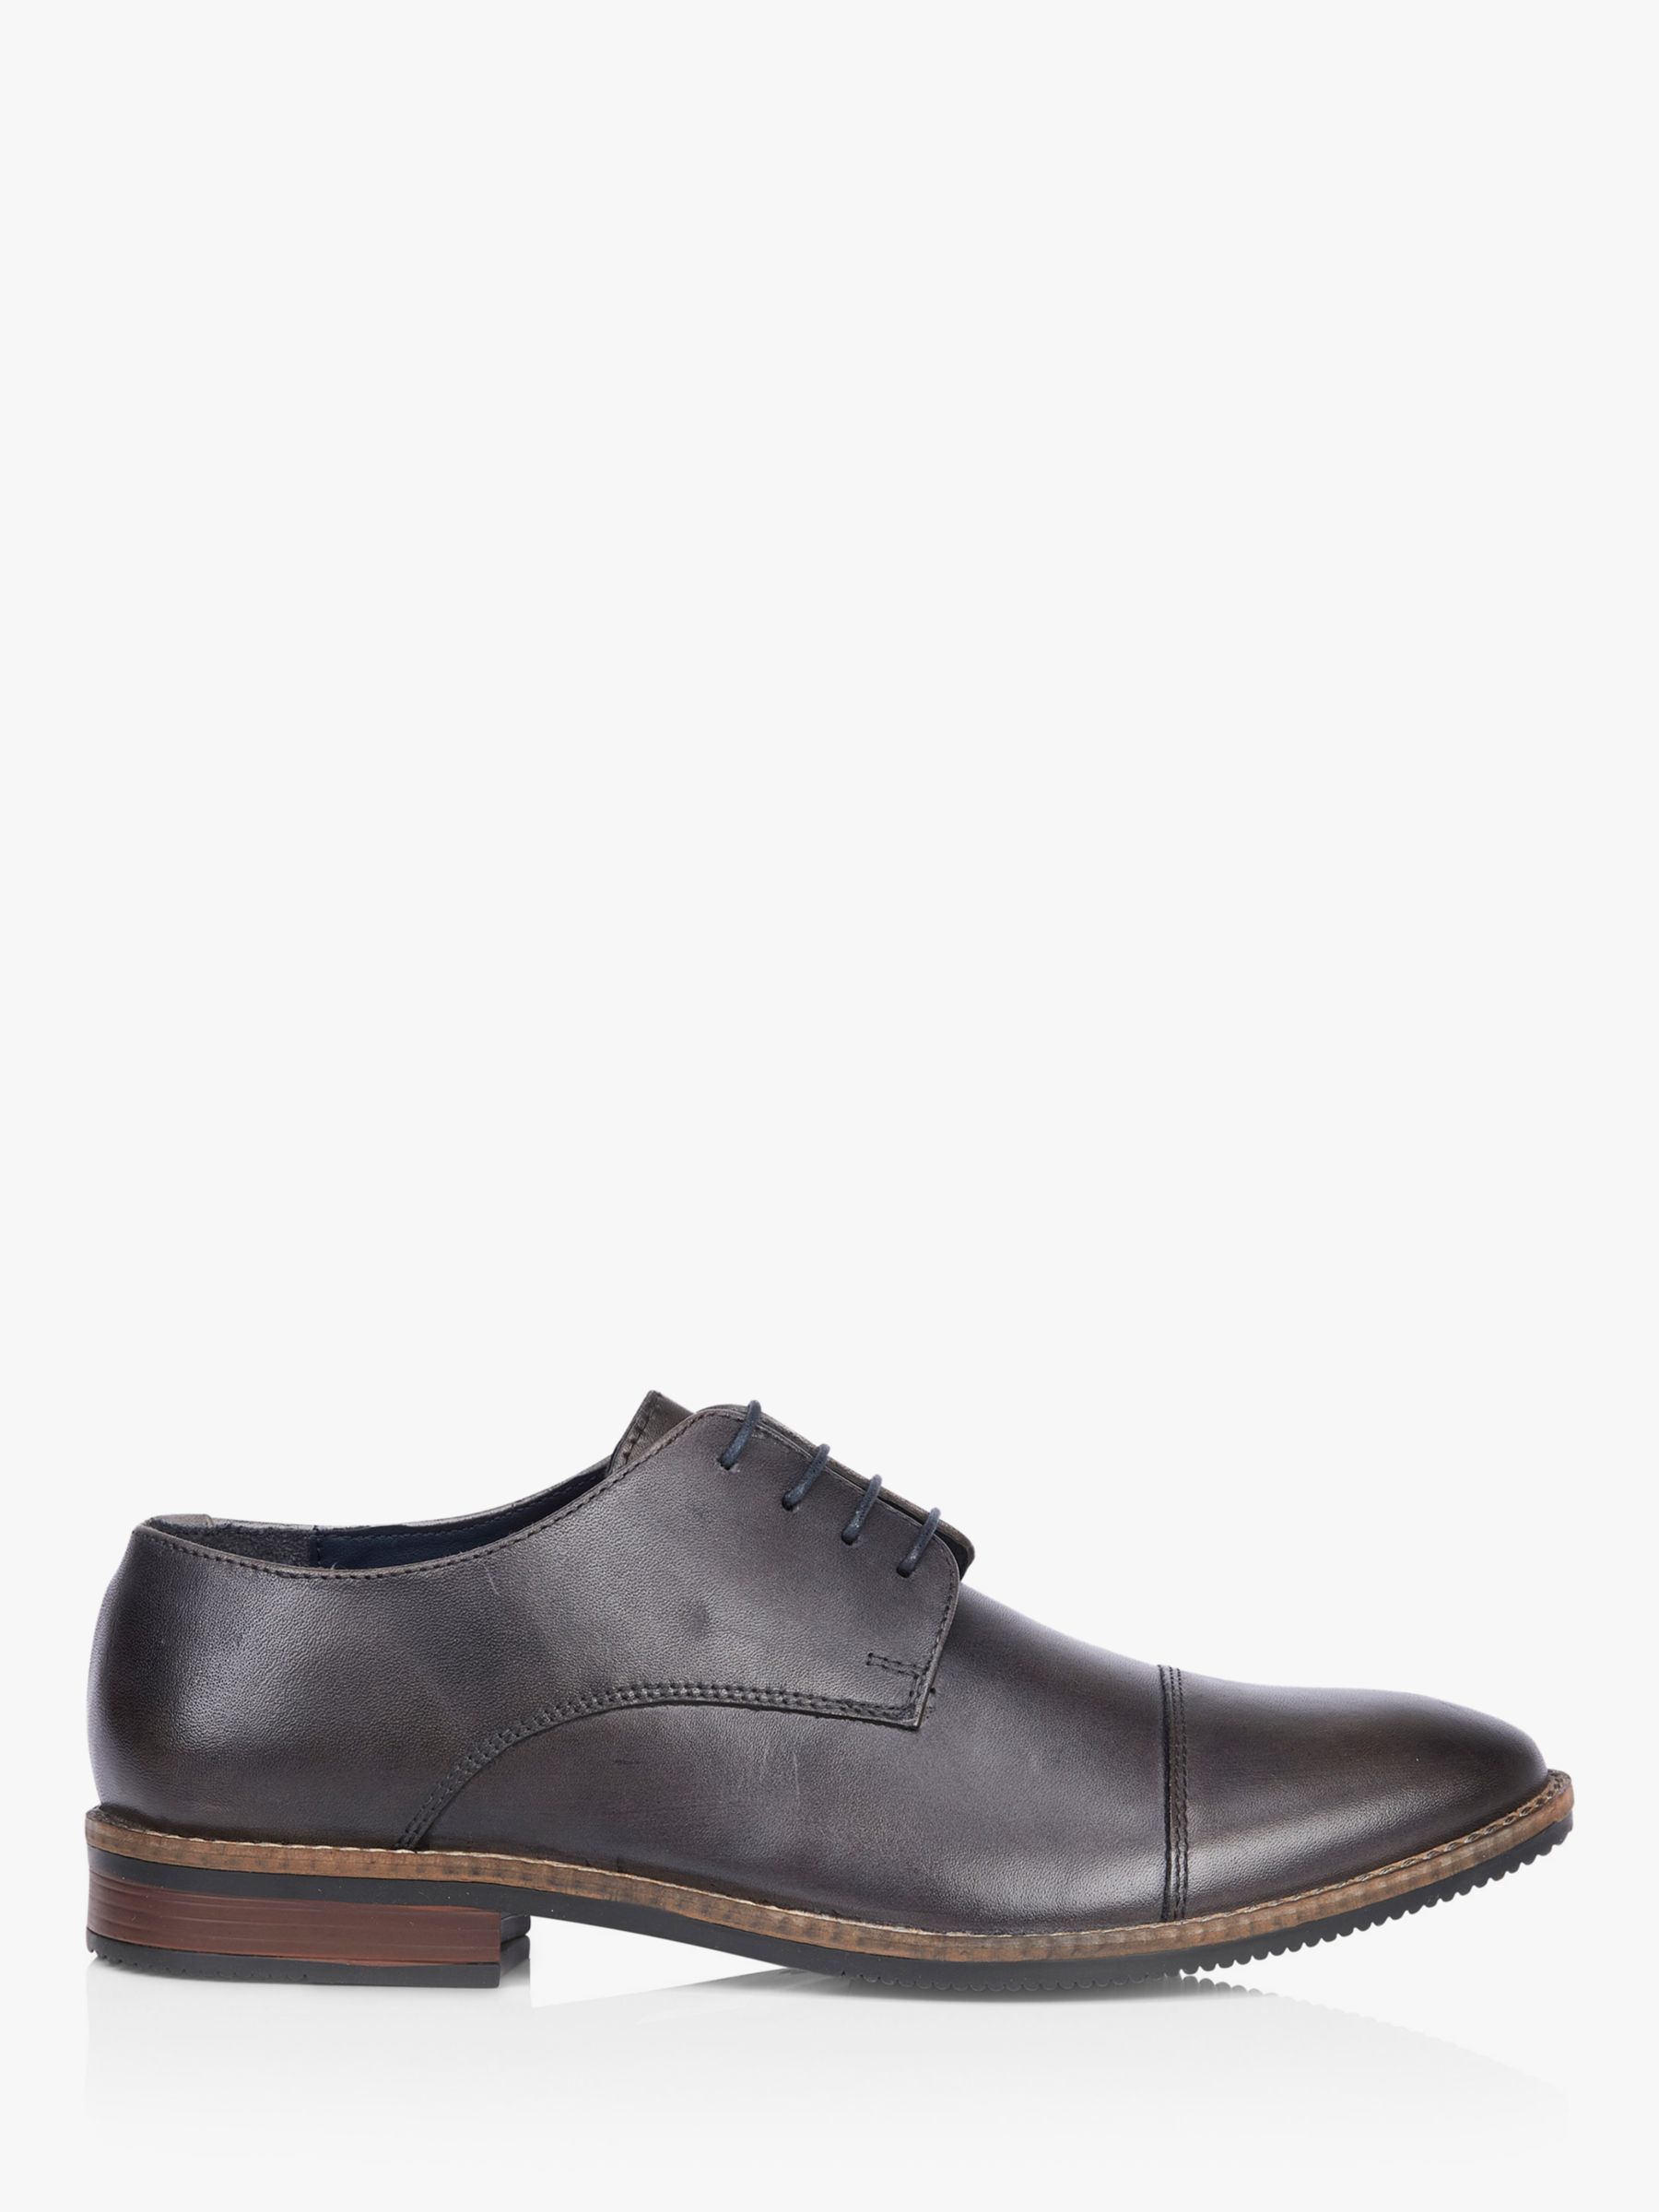 Silver Street London Rufus Derby Shoes, Grey, 7